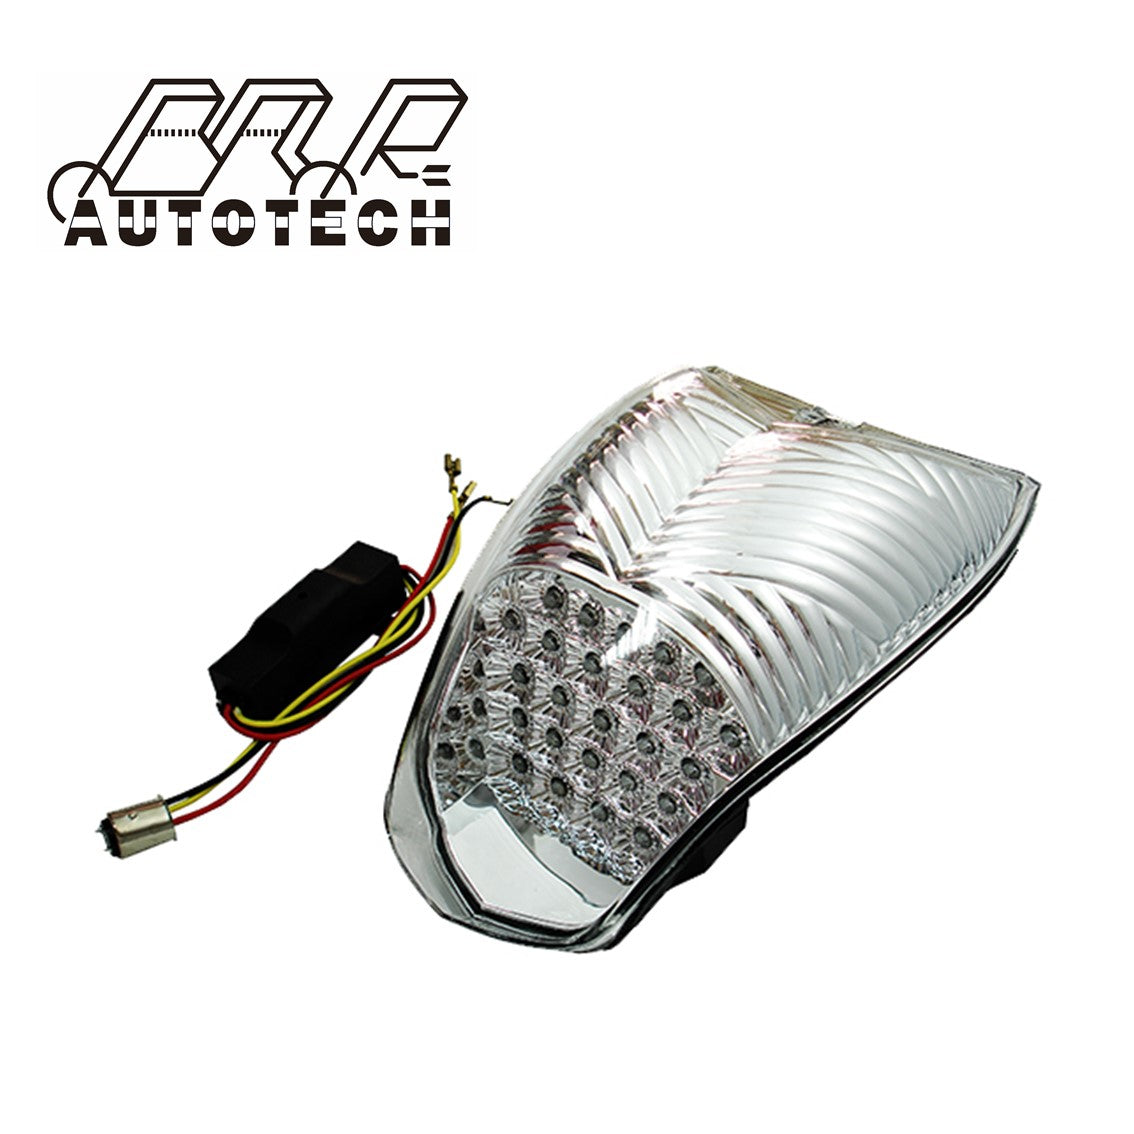 For BMW K1200S K1200R integreted Motorcycle LED Tail Light for brake lamp